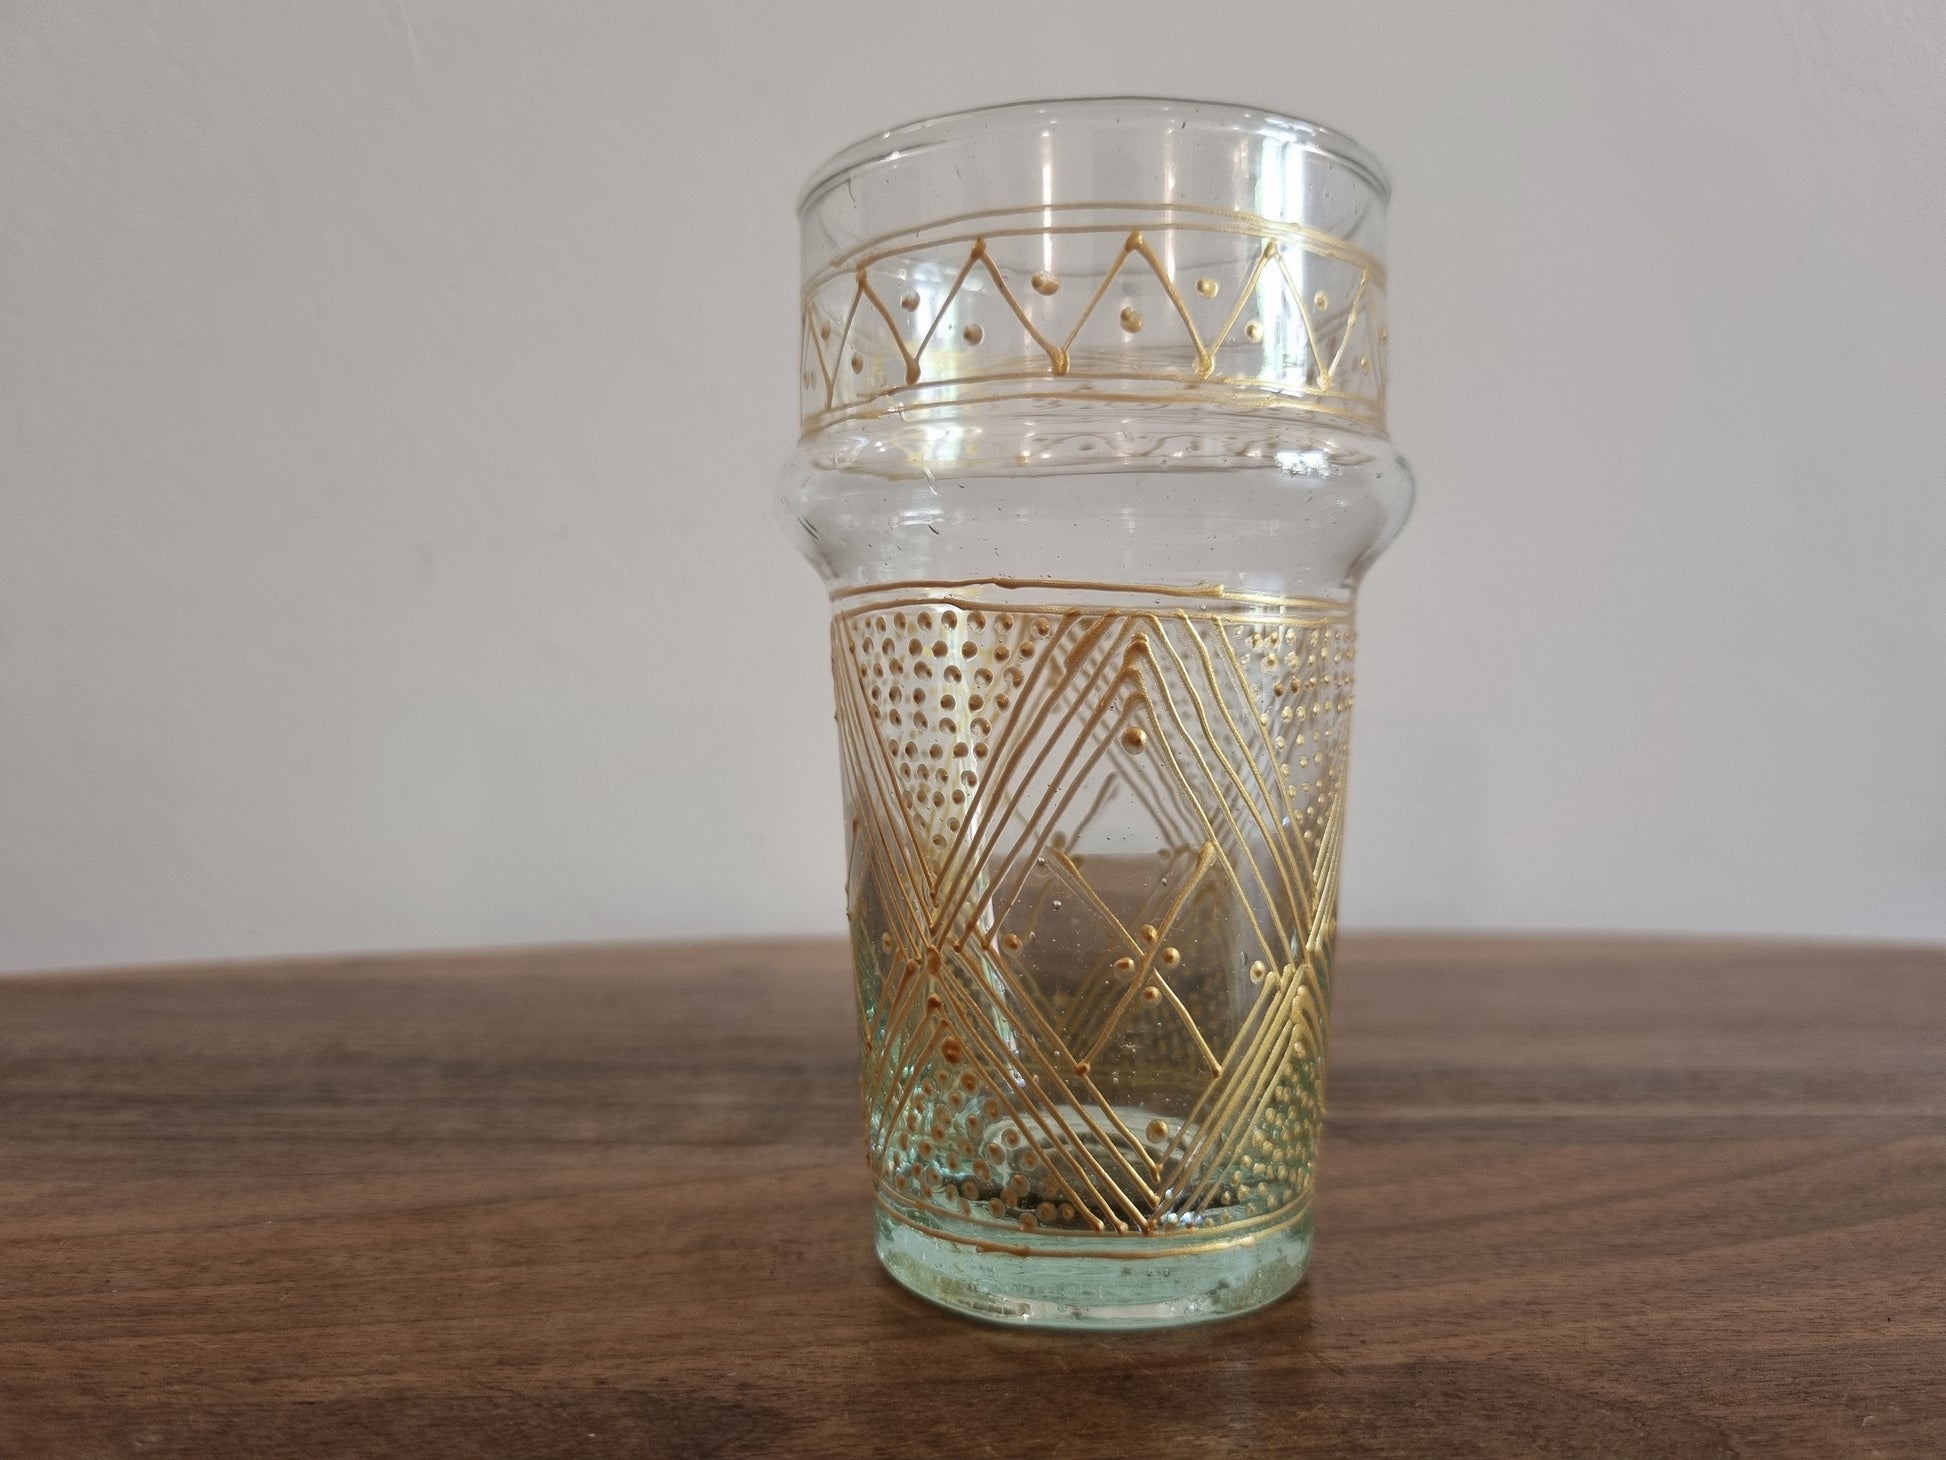 Ensemble de verrerie colorée beldi du Maroc, composé de six verres faits à la main.